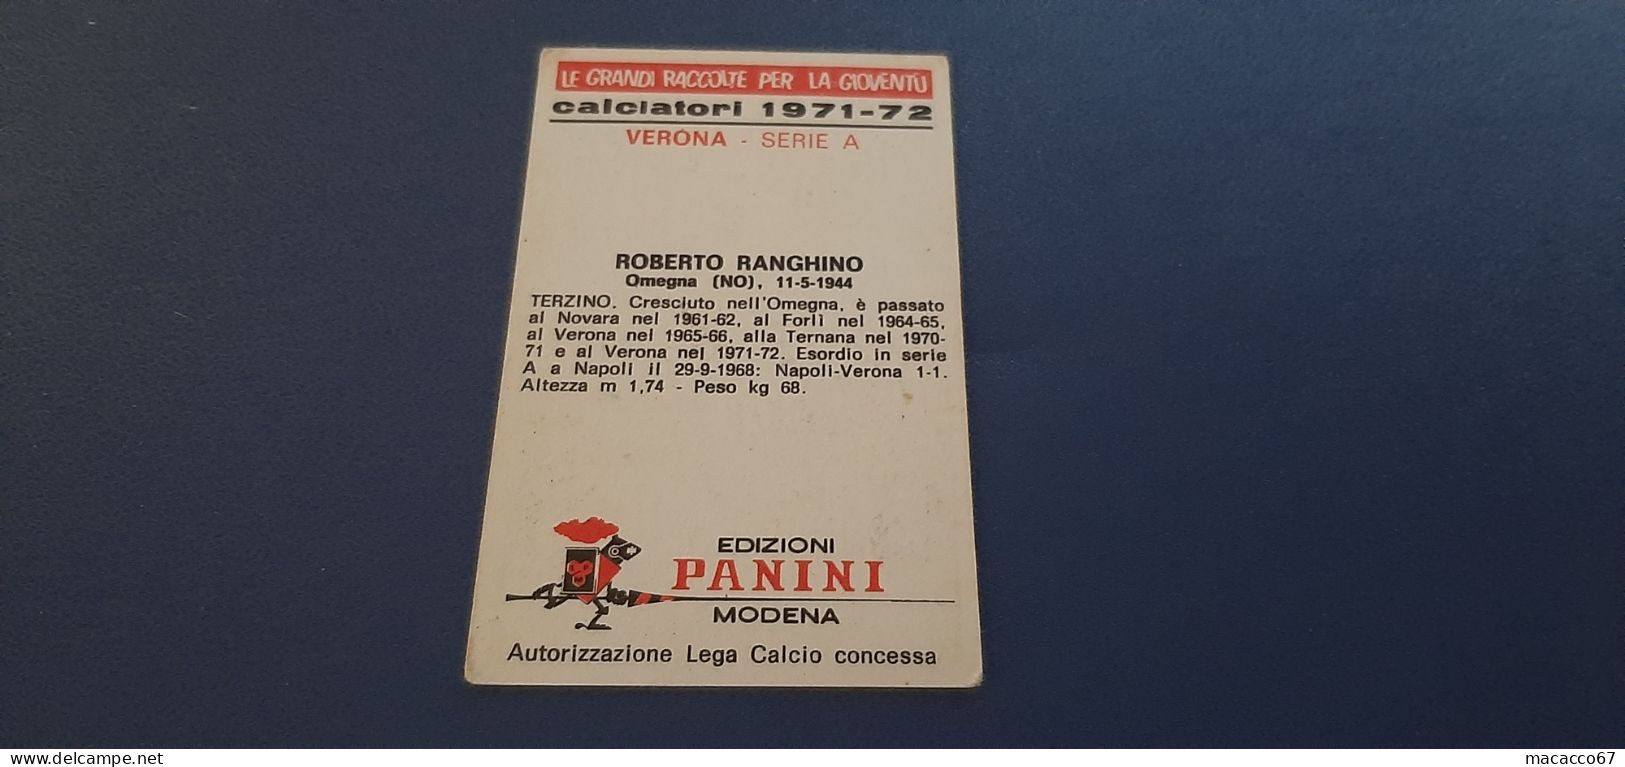 Figurina Calciatori Panini 1971/72 - Ranghino Verona - Edizione Italiana